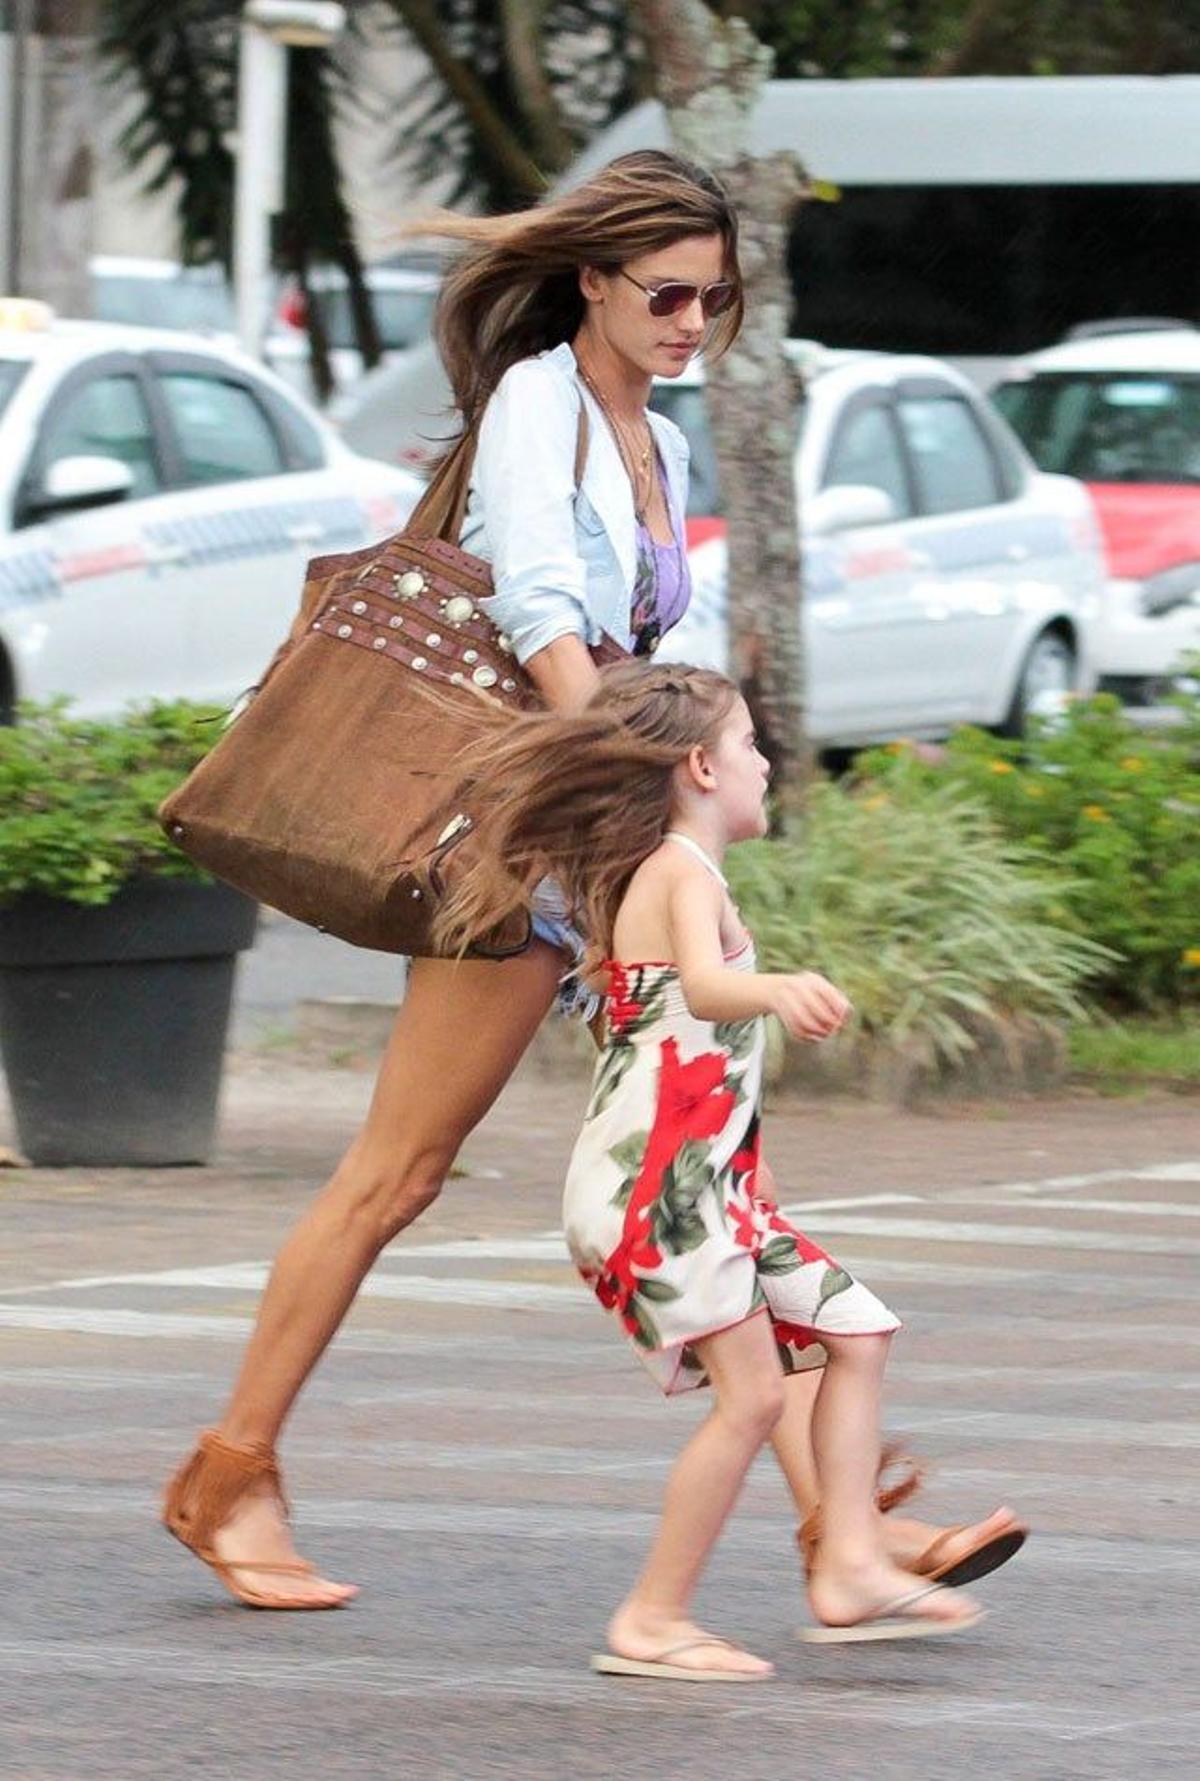 Alessandra Ambrosio muy pendiente de su hija Anja mientras cruzan la calle